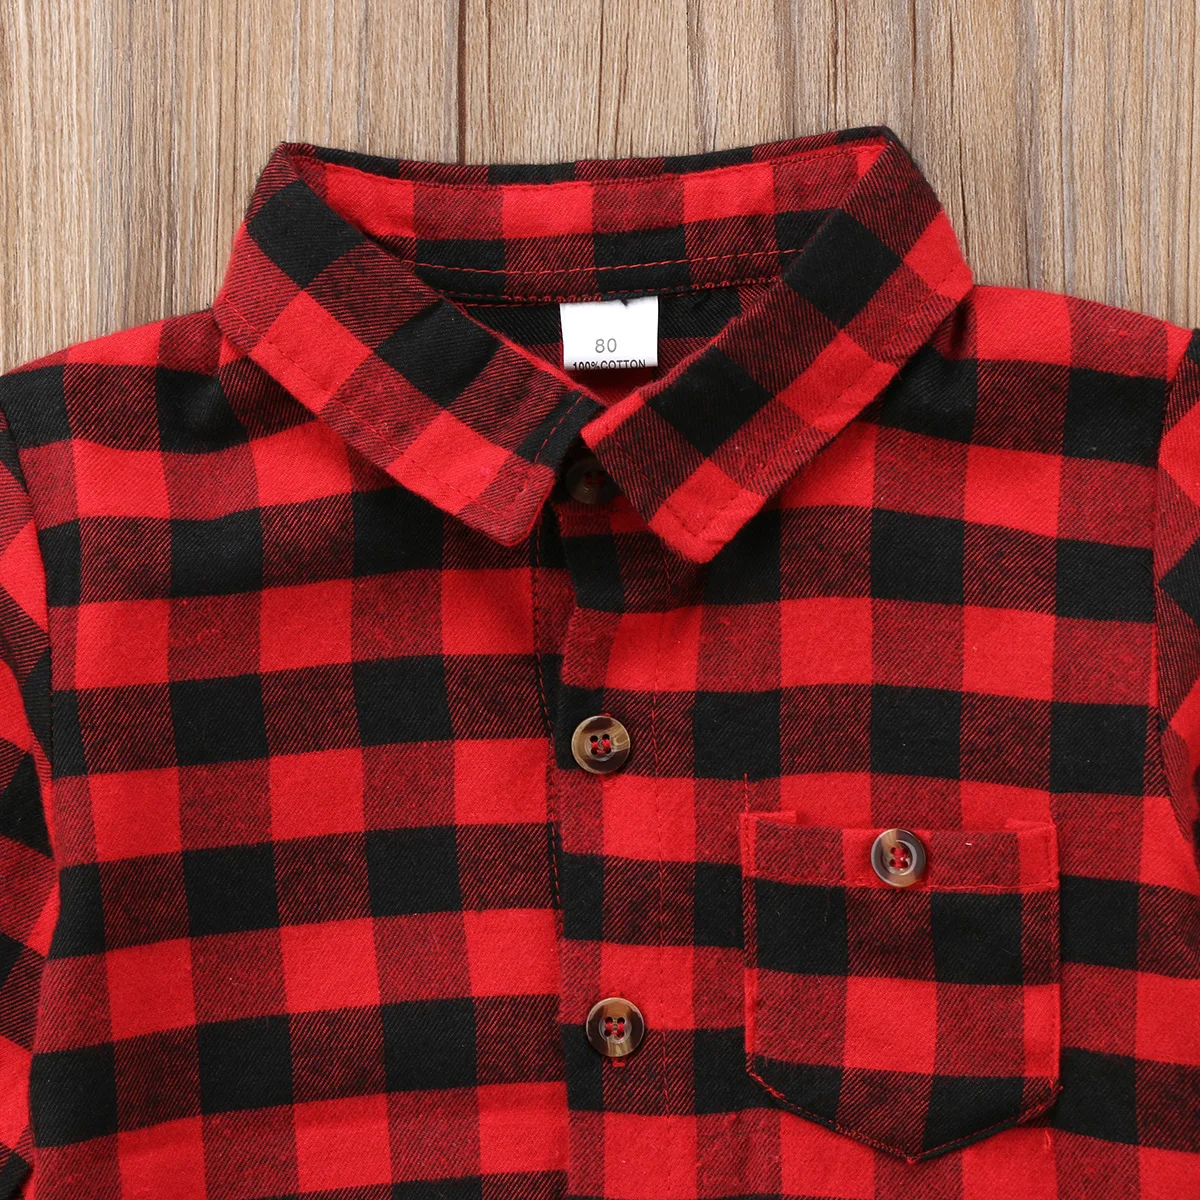 Pudcoco/Популярная черно-красная клетчатая рубашка детская рубашка с длинными рукавами для мальчиков пуловеры, топы, размер От 2 до 7 лет